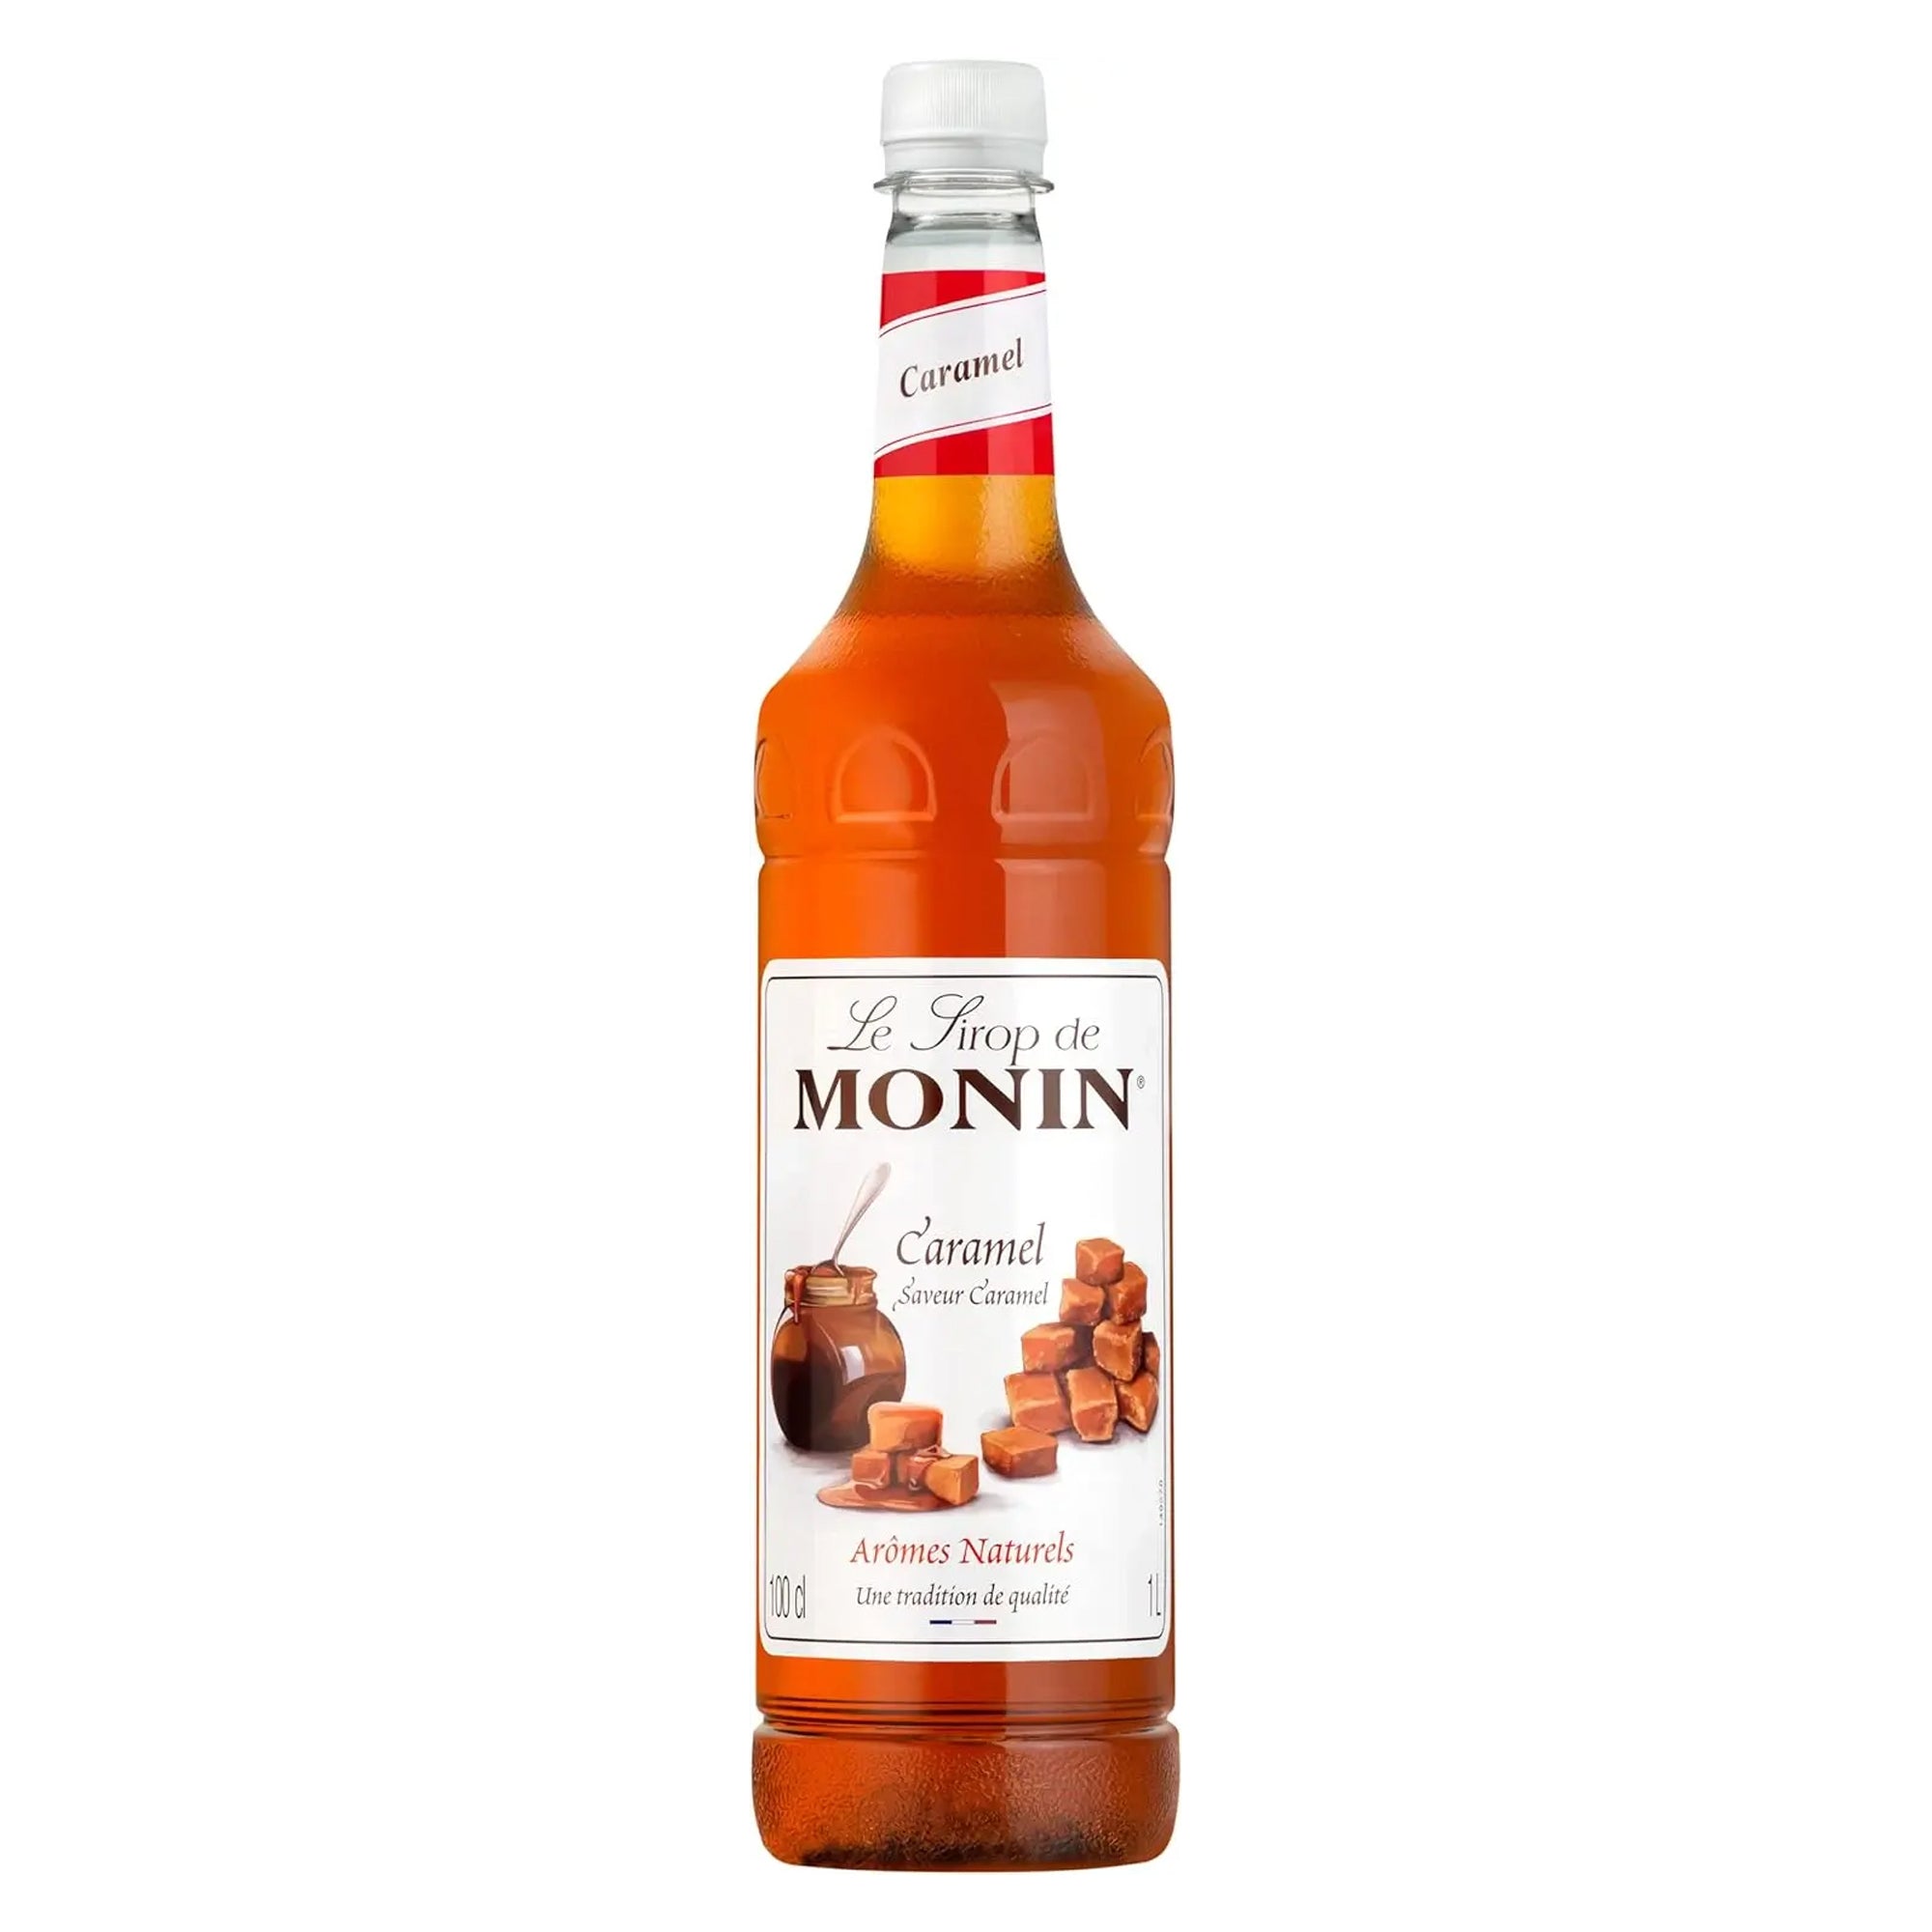 Monin Caramel Syrup 1ltr